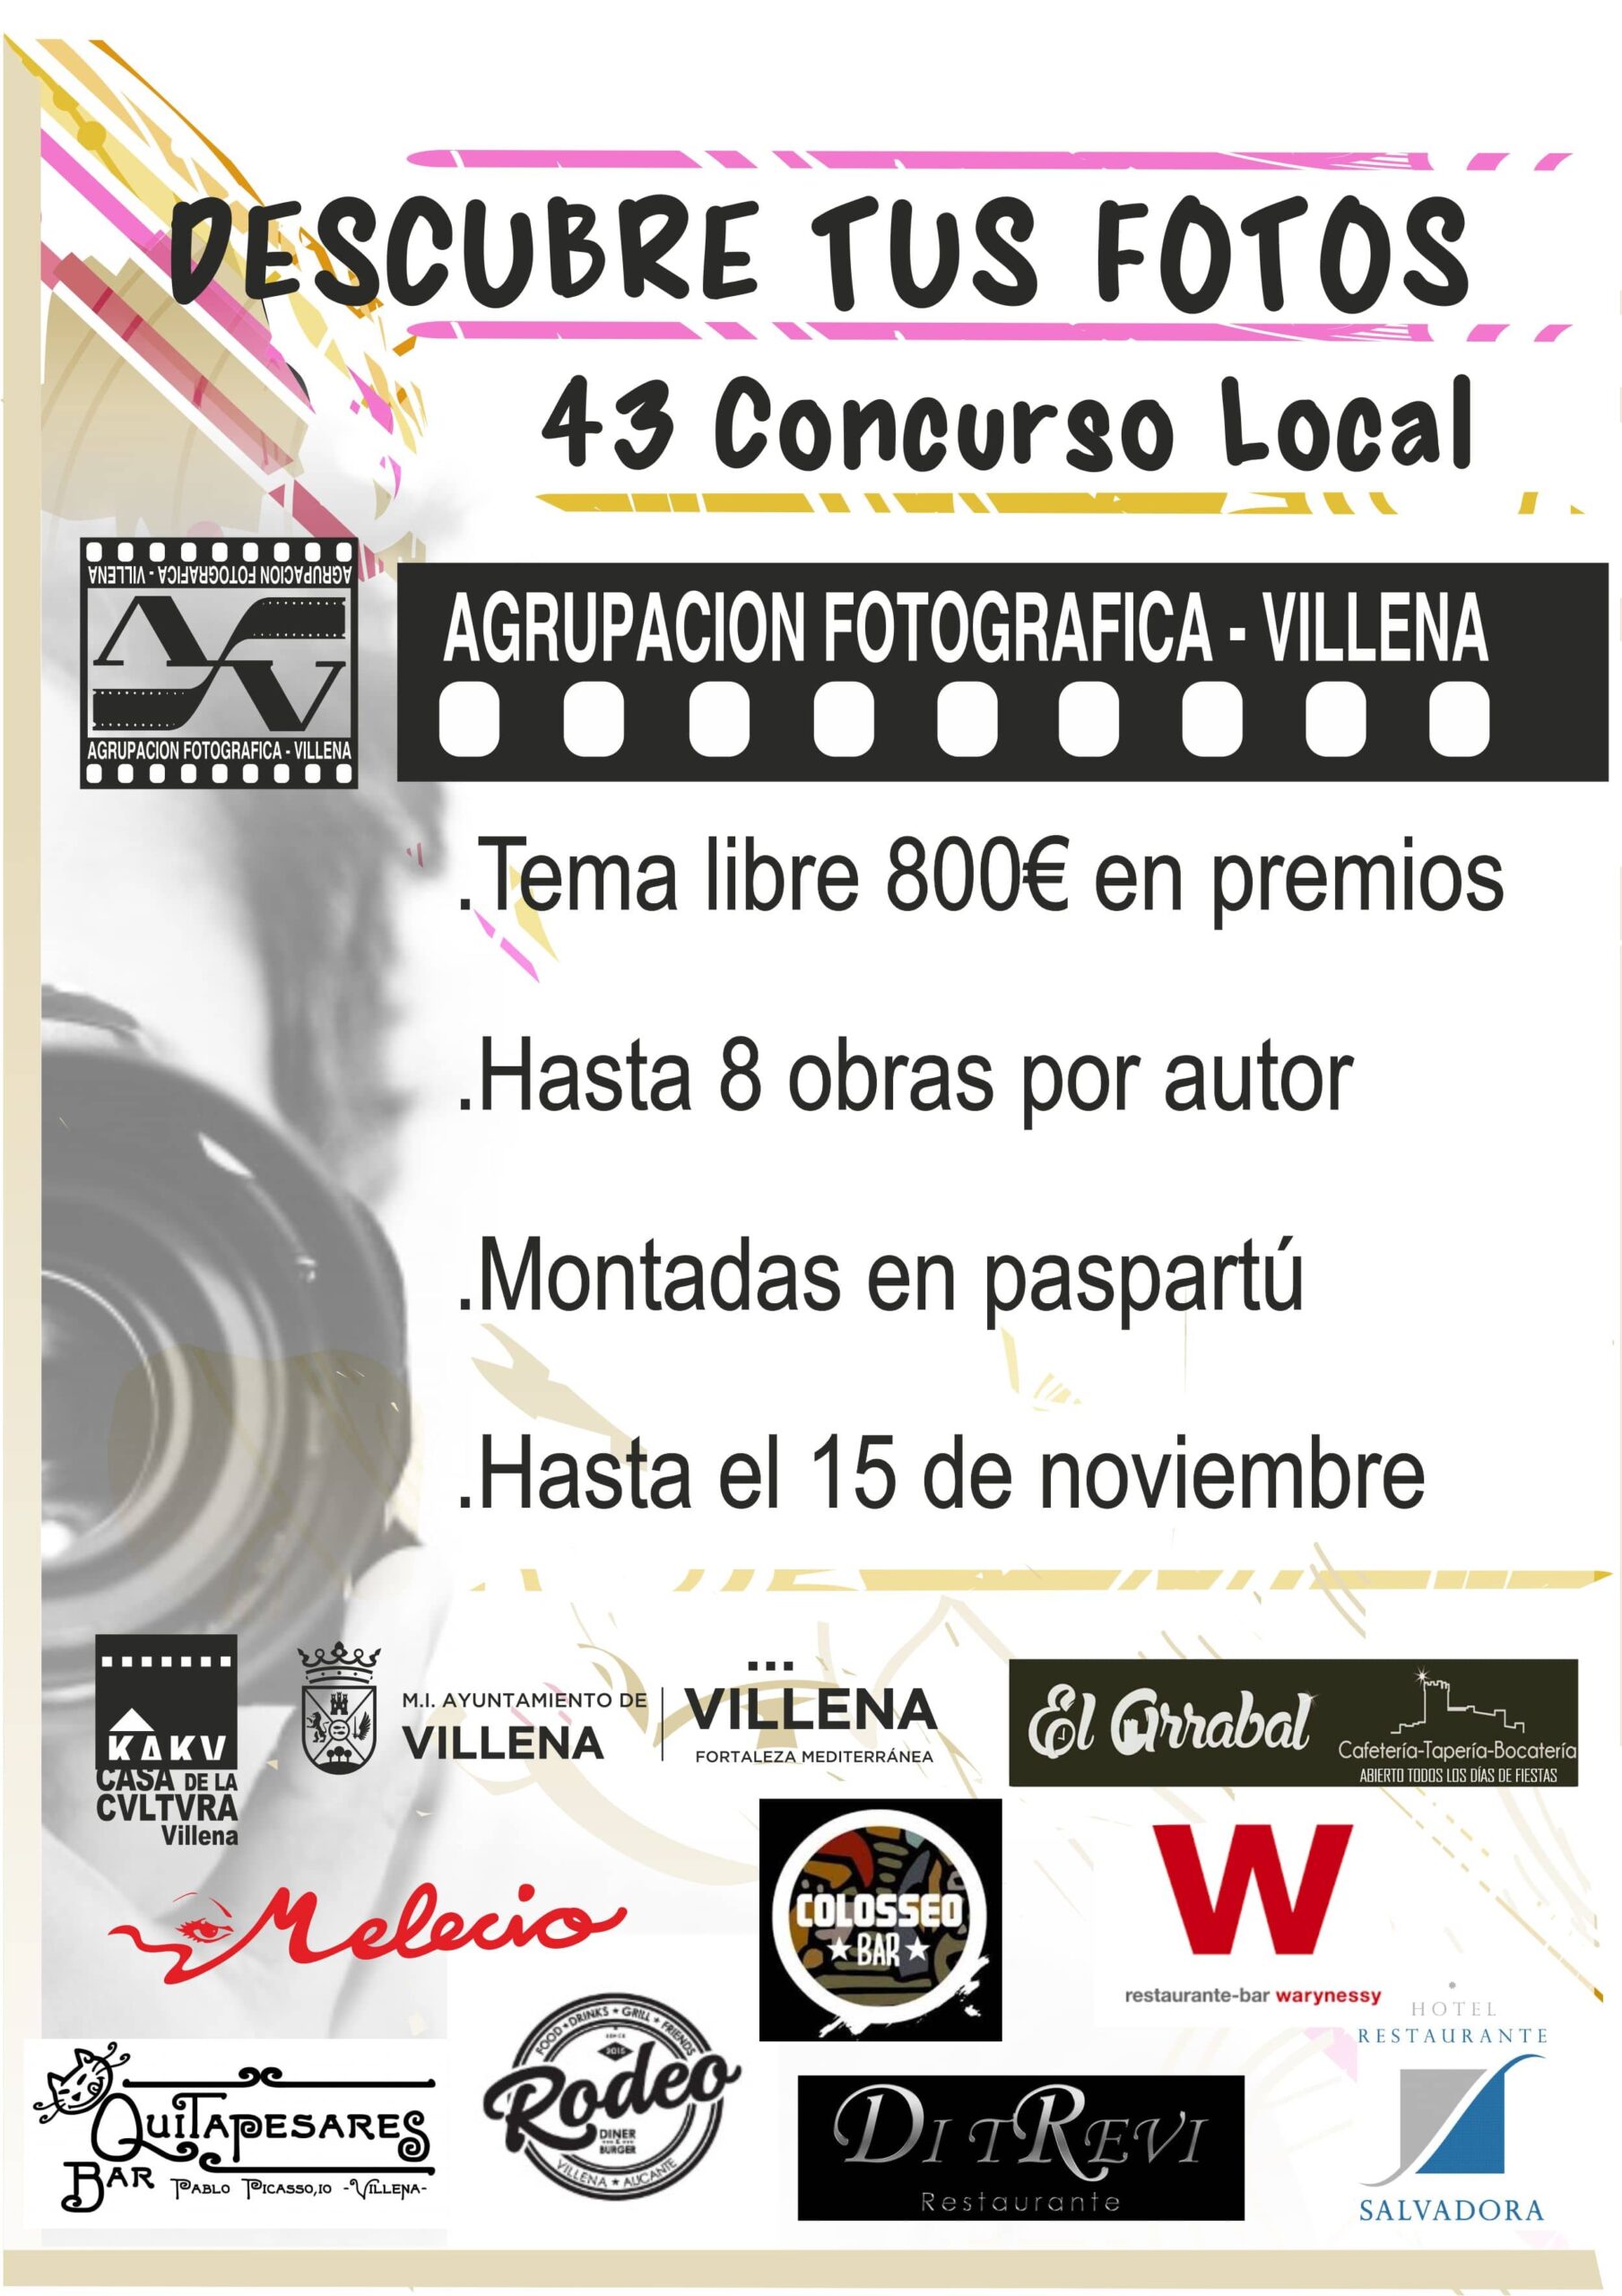 La agrupación fotográfica Villena organiza el 43 concurso local “Descubre tus fotos”